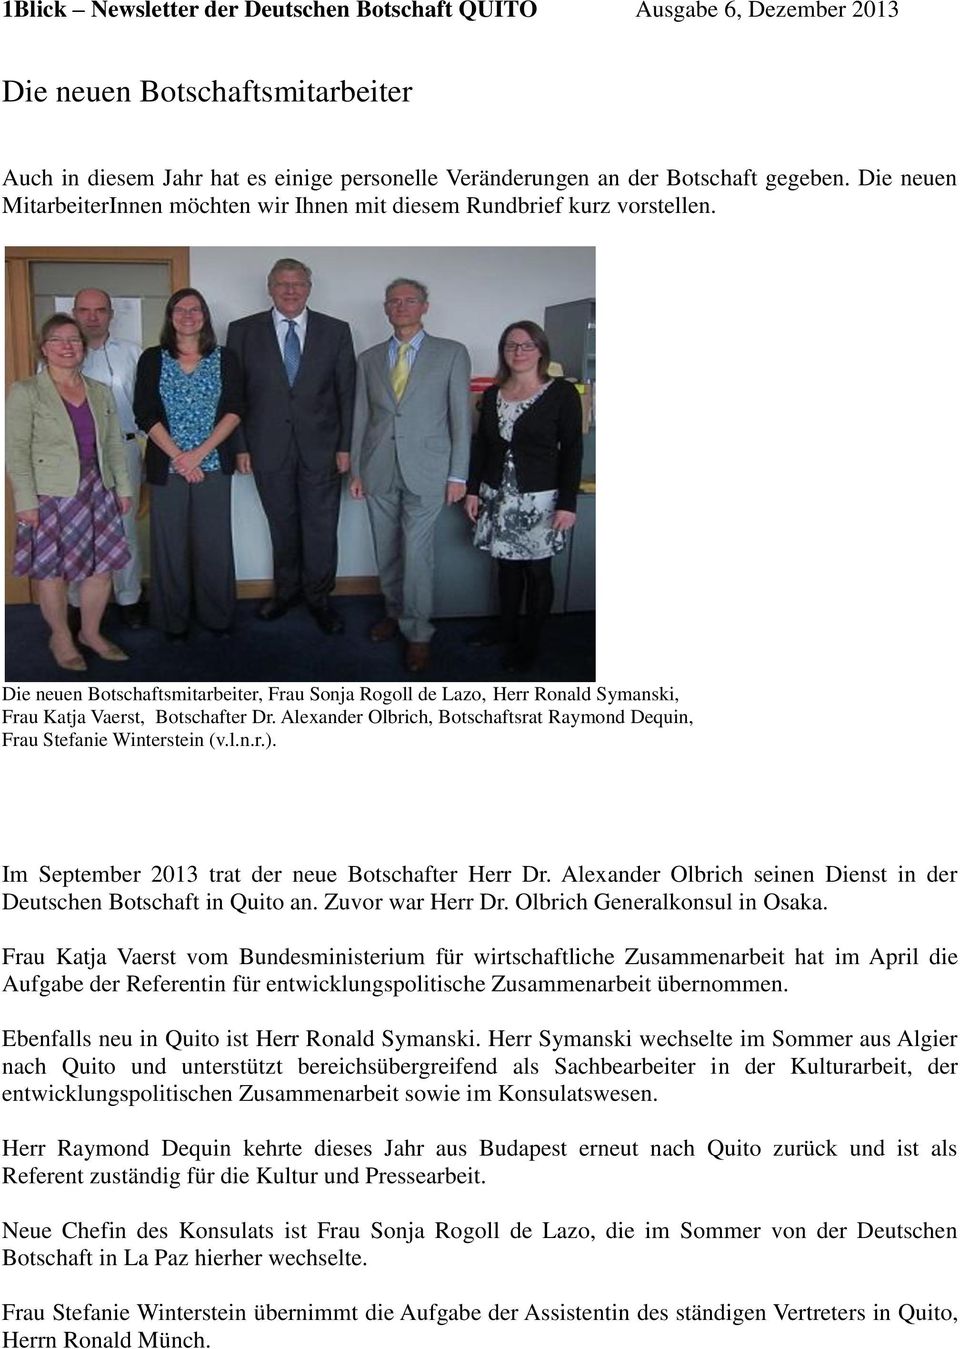 Im September 2013 trat der neue Botschafter Herr Dr. Alexander Olbrich seinen Dienst in der Deutschen Botschaft in Quito an. Zuvor war Herr Dr. Olbrich Generalkonsul in Osaka.